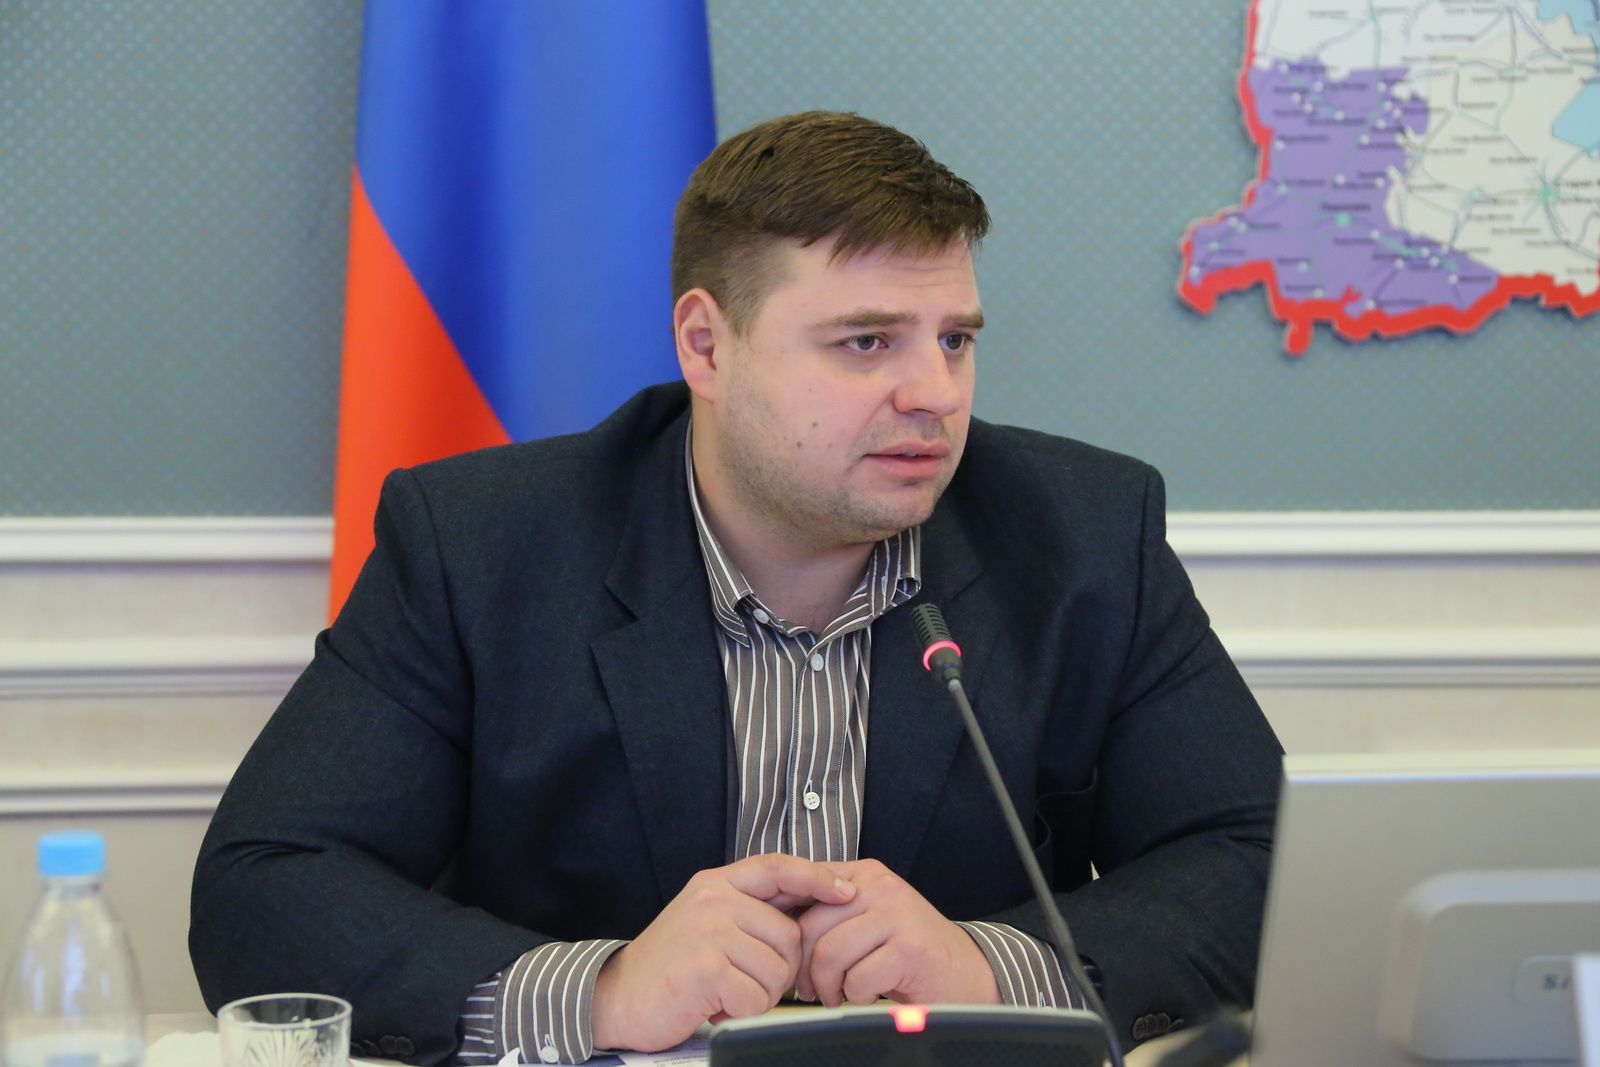 Сергей Морозов: «Во всех муниципальных образования региона должны работать пункты оказания государственной юридической помощи»